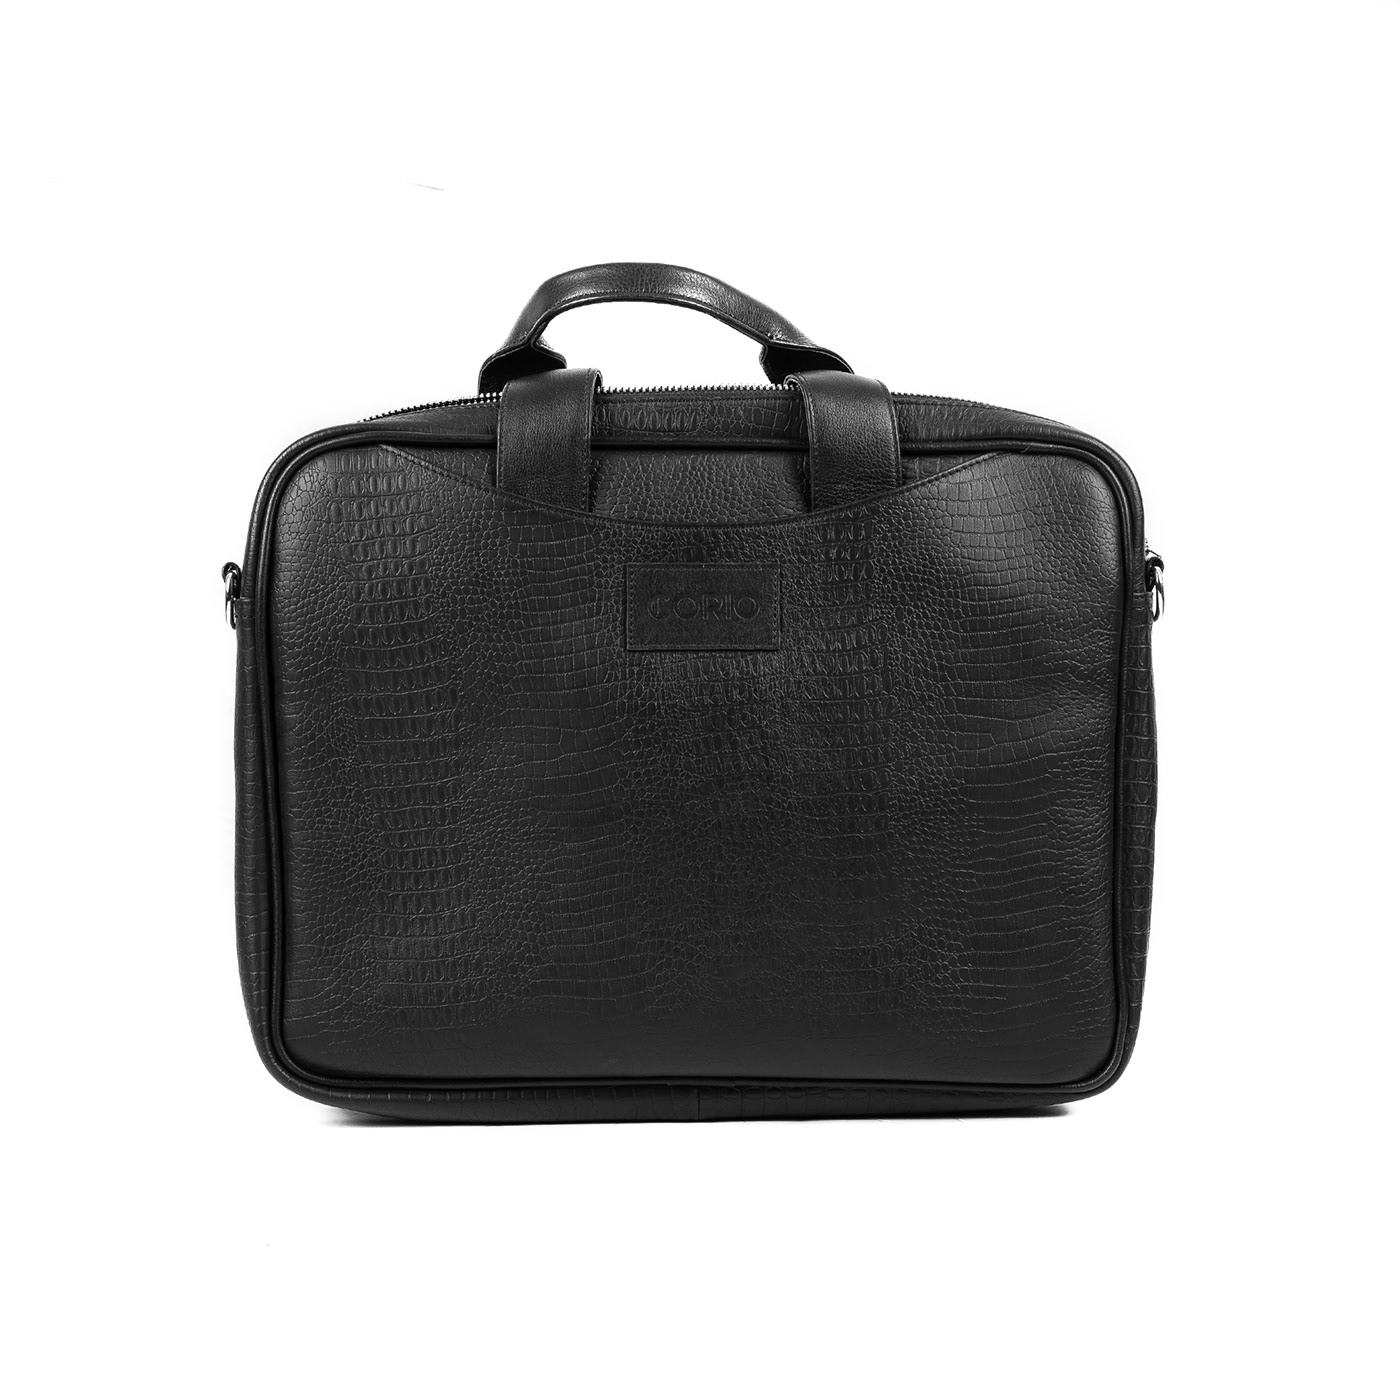 bags black Fashion  handbag handmade laptop bag leather Luggage and bags man Photography 